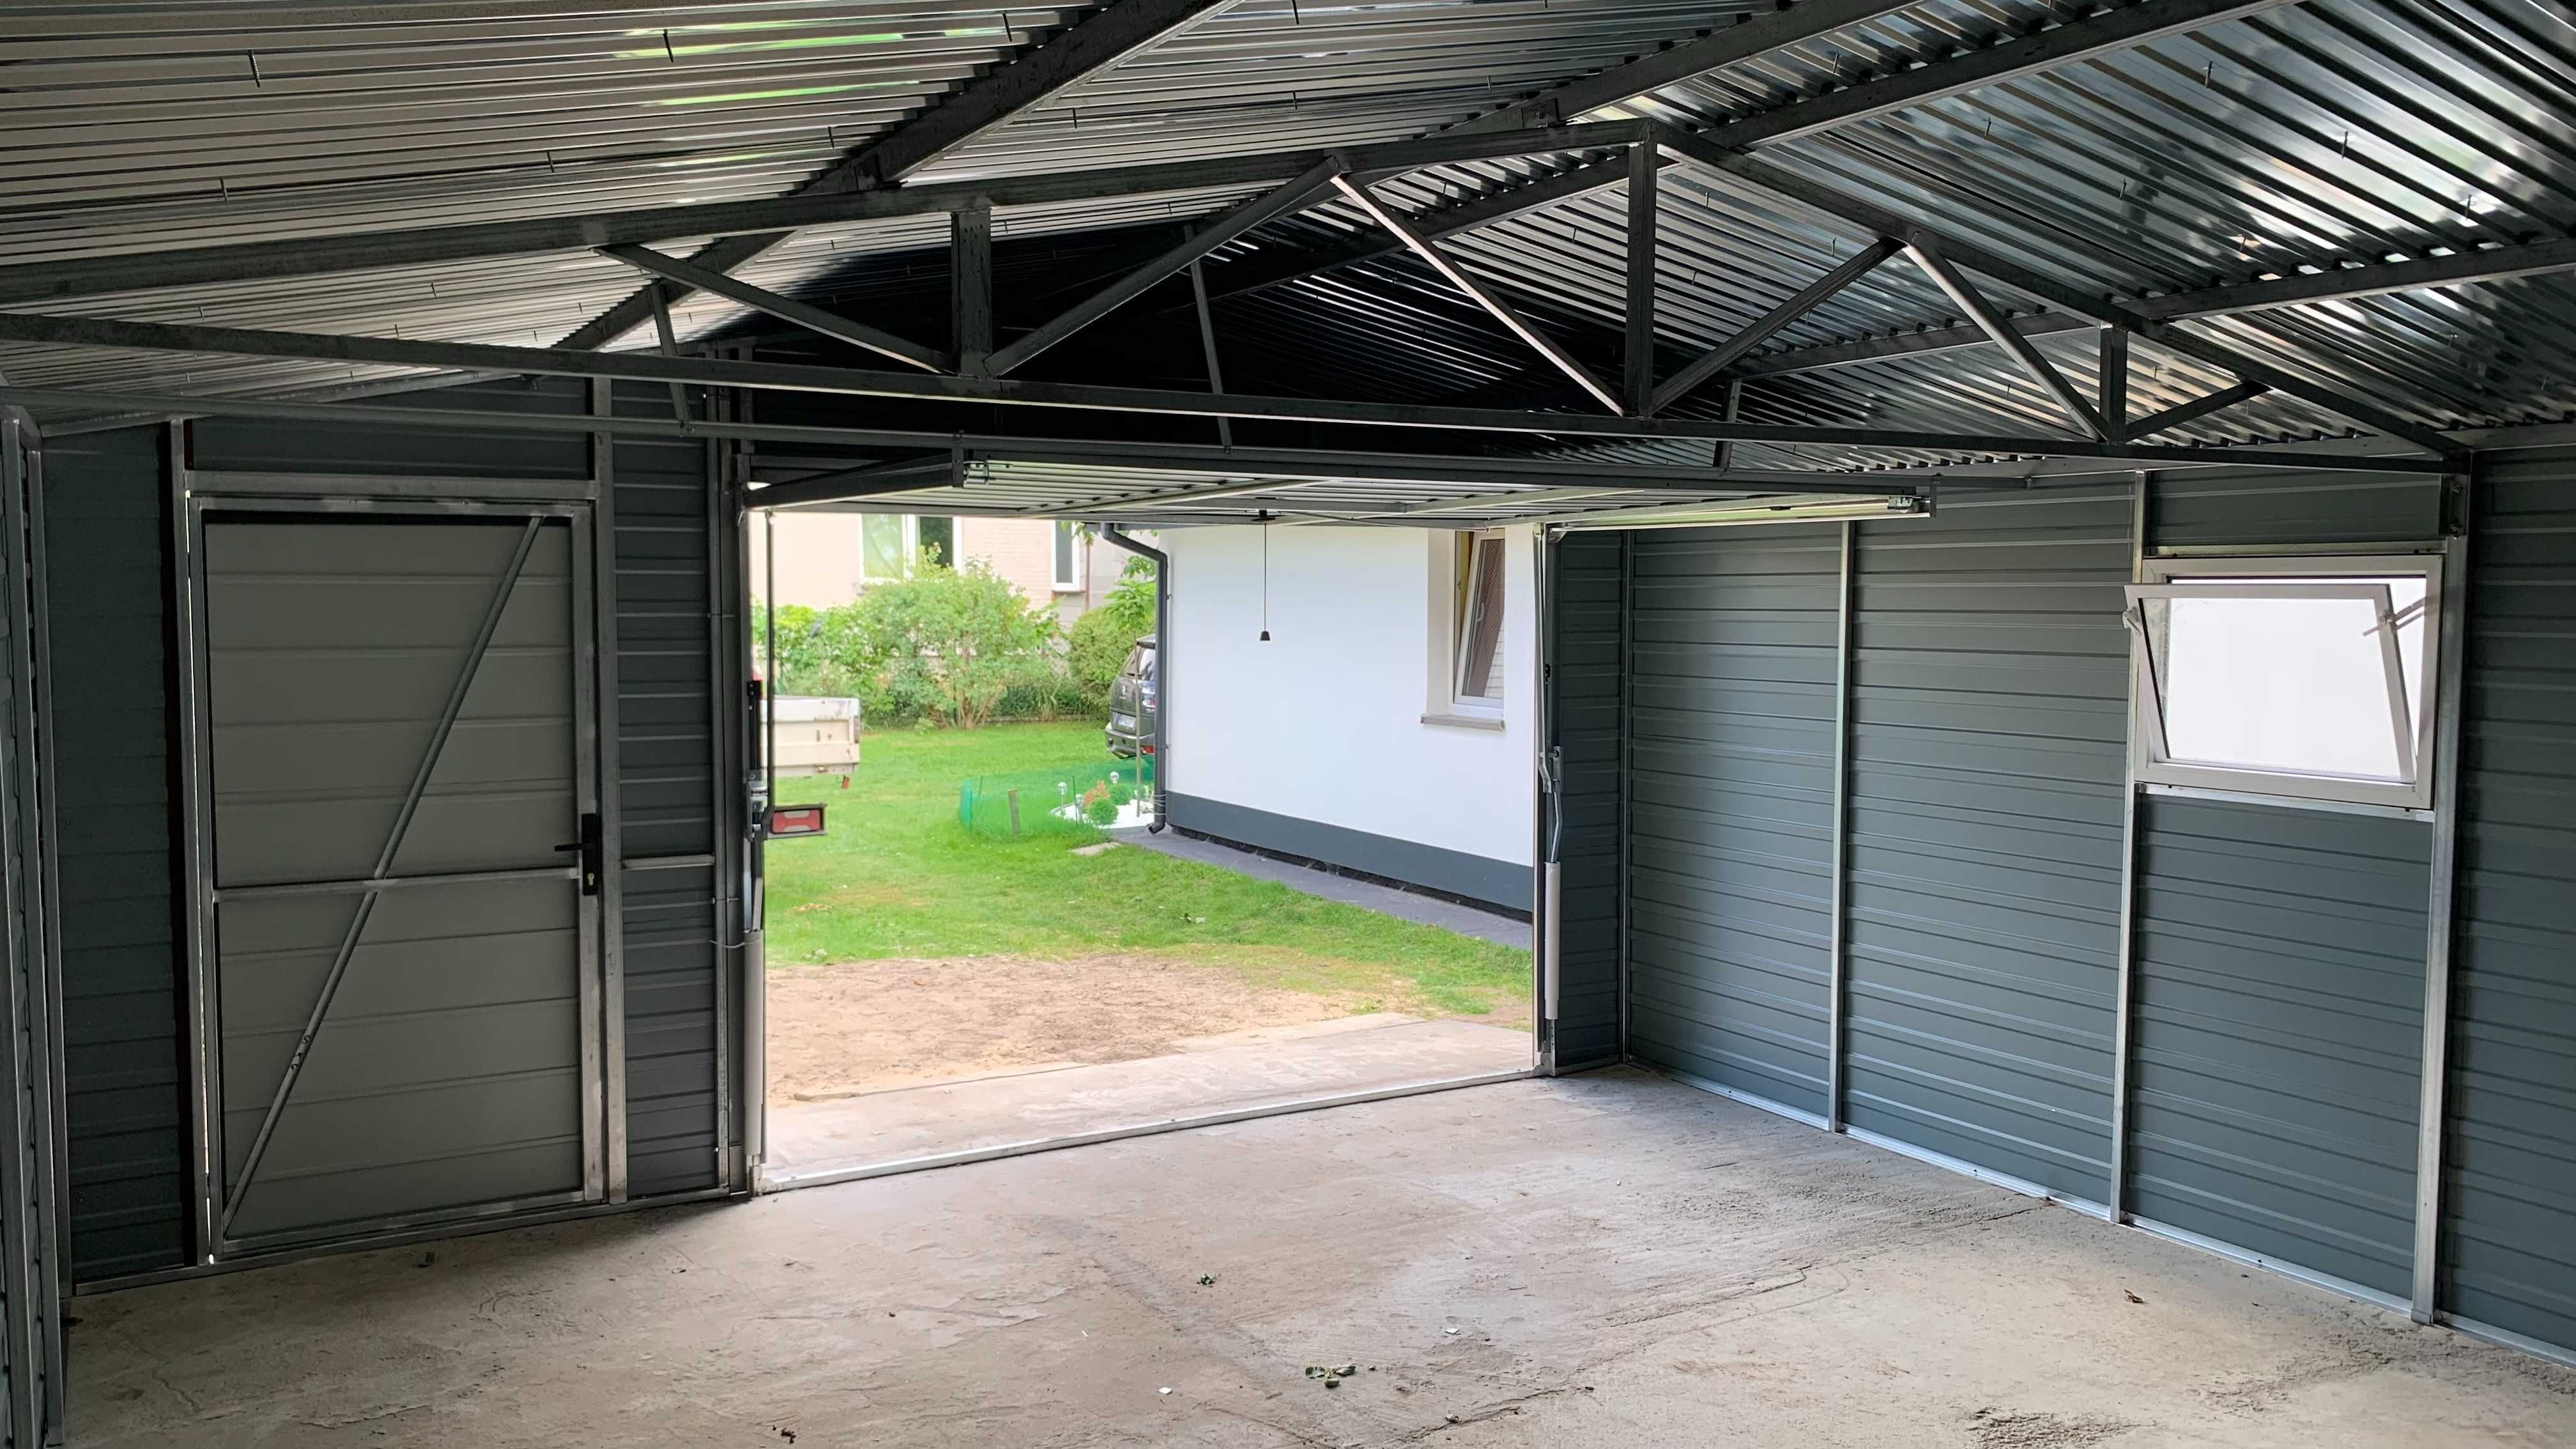 Garaż blaszany 4x6 konstrukcja ocynkowana brama + drzwi + okno